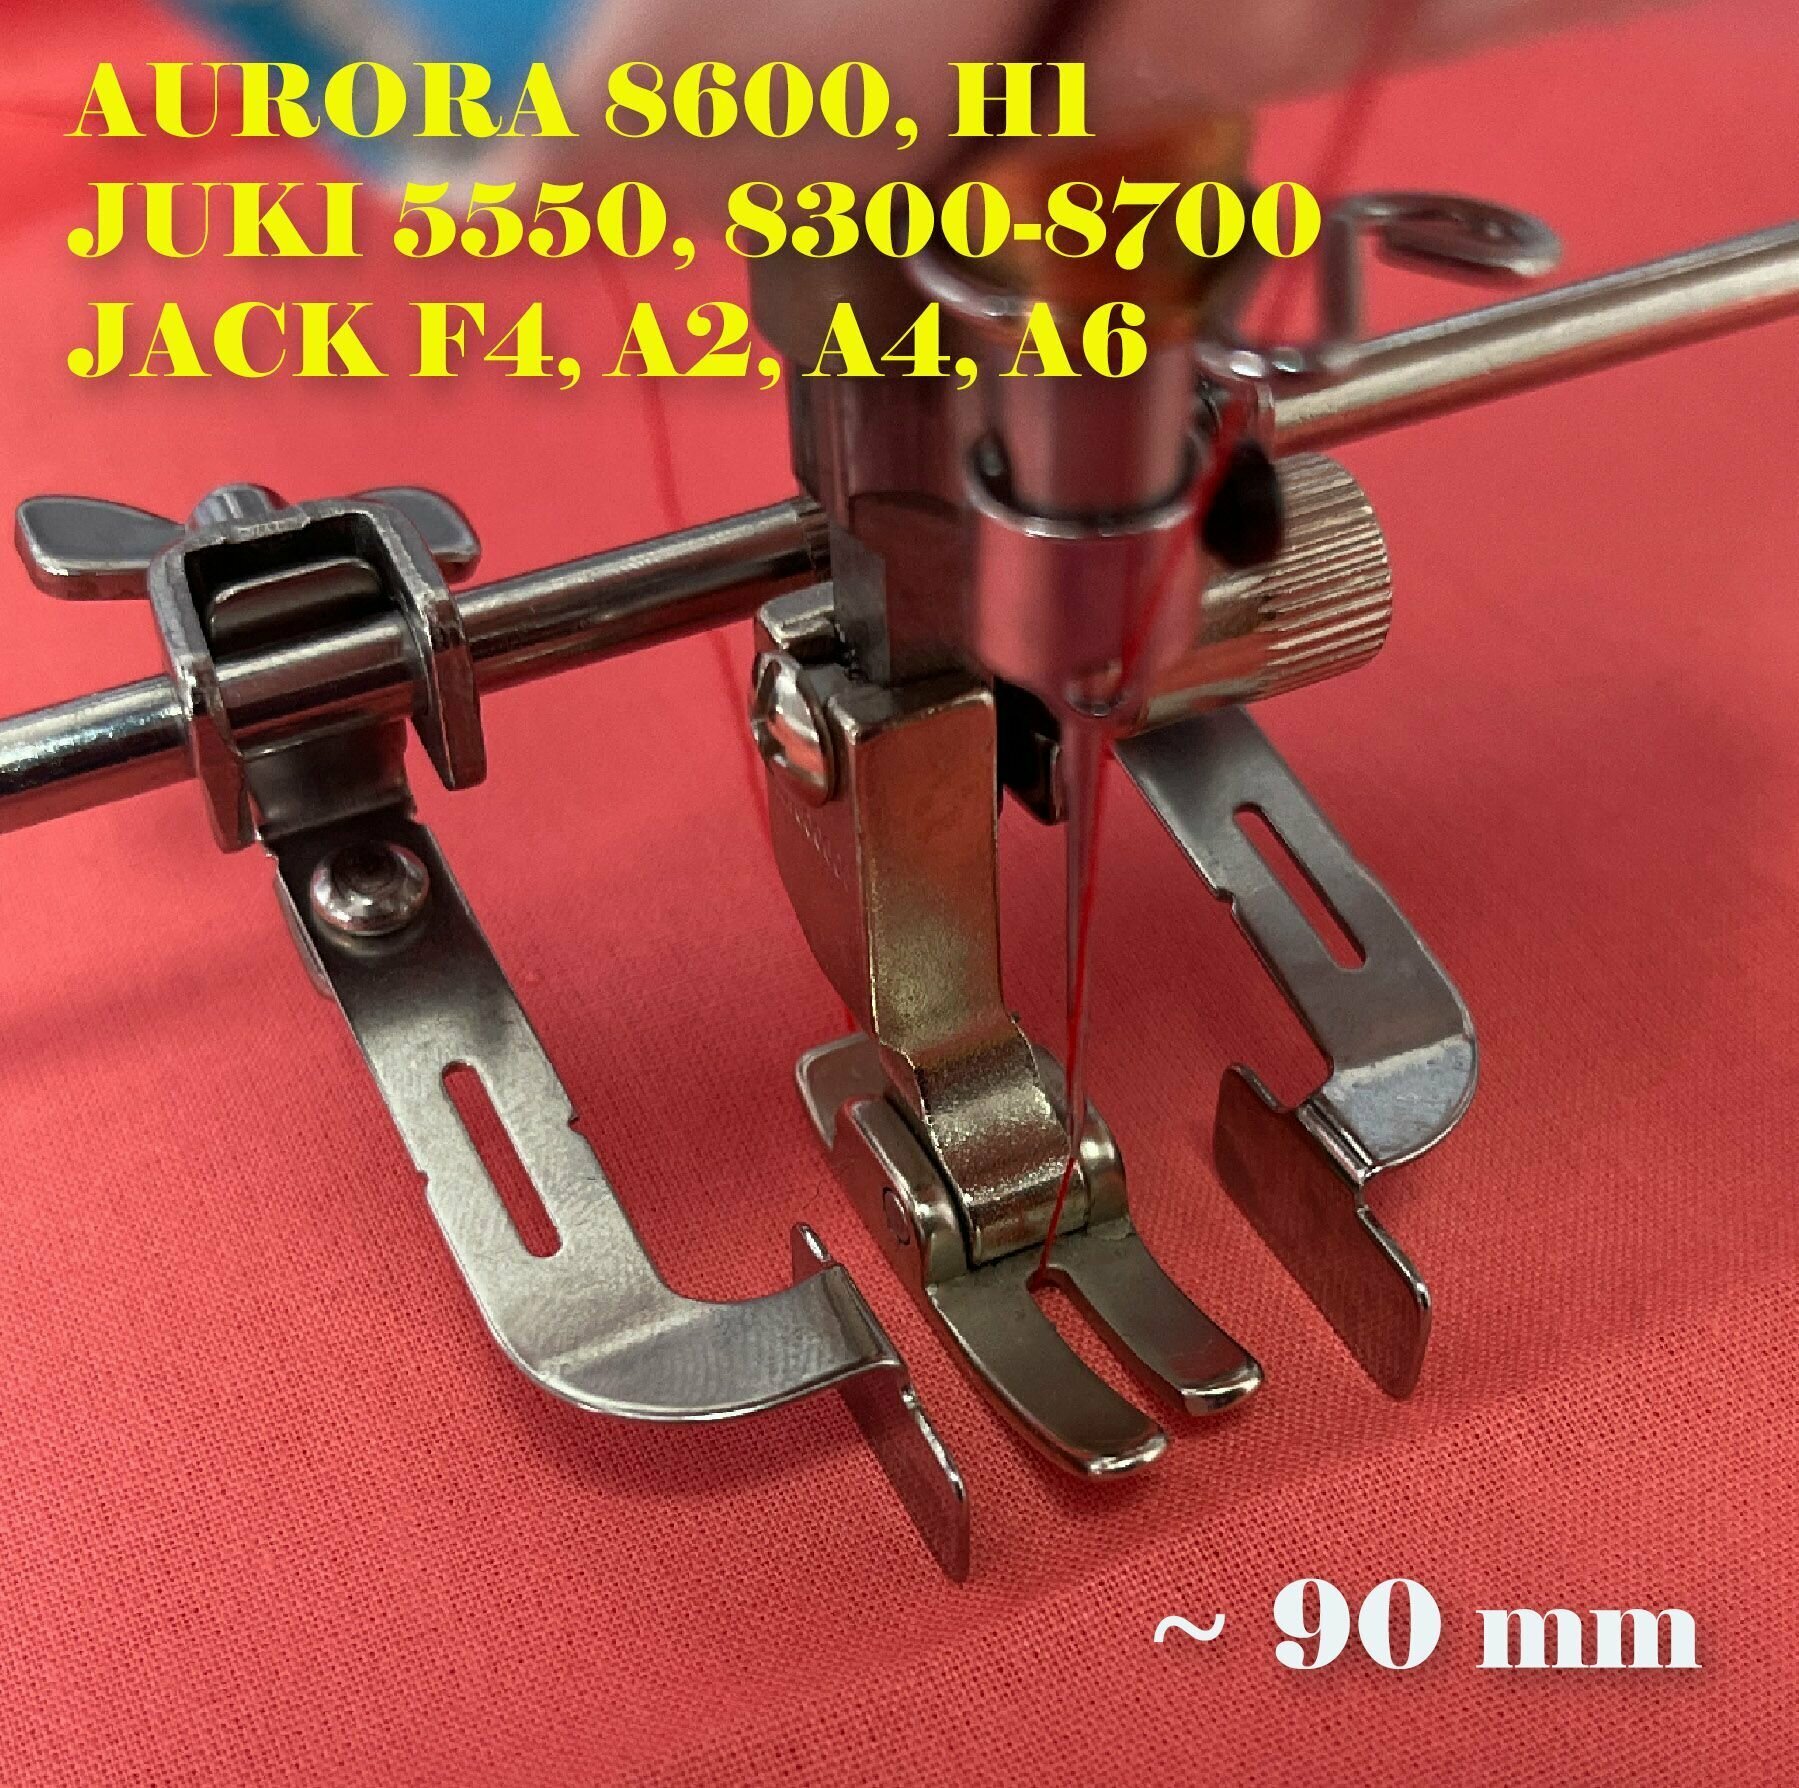 Направляющая для шитья / ограничитель двухсторонний (по 45 мм) для промышленных швейных машин JACK F4 A2-6 AURORA H1 5550 8600 JUKI 8300-8700.